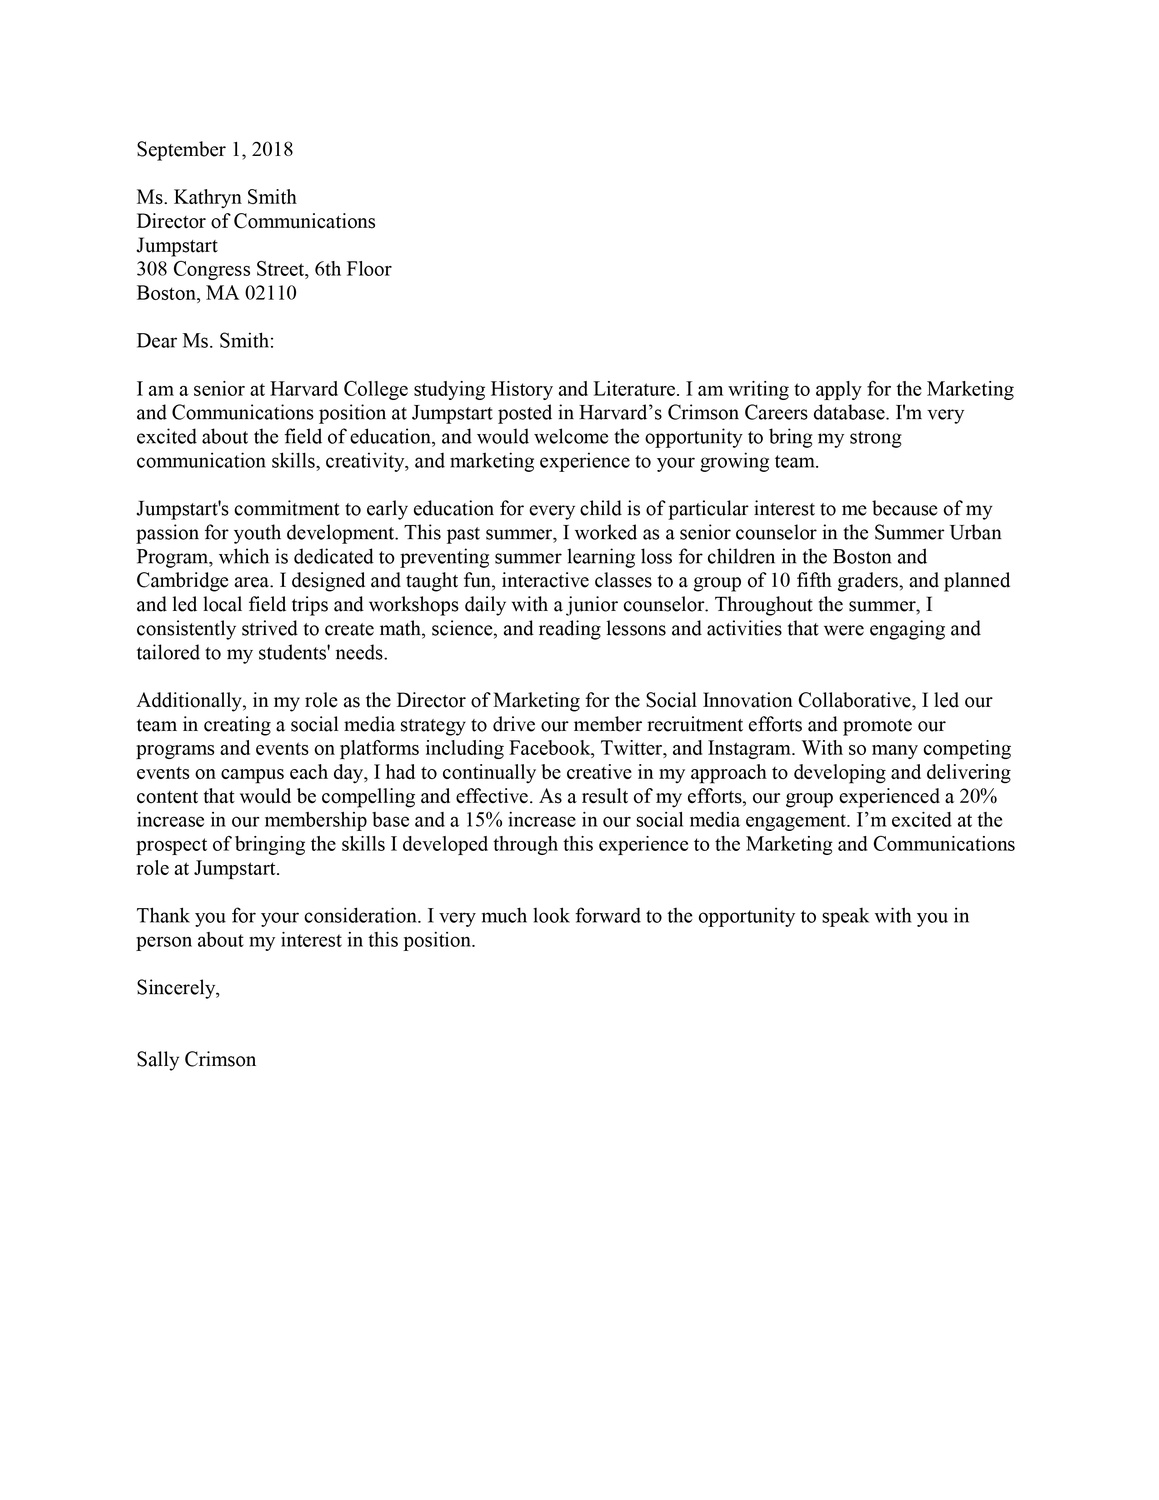 cover letter harvard business school